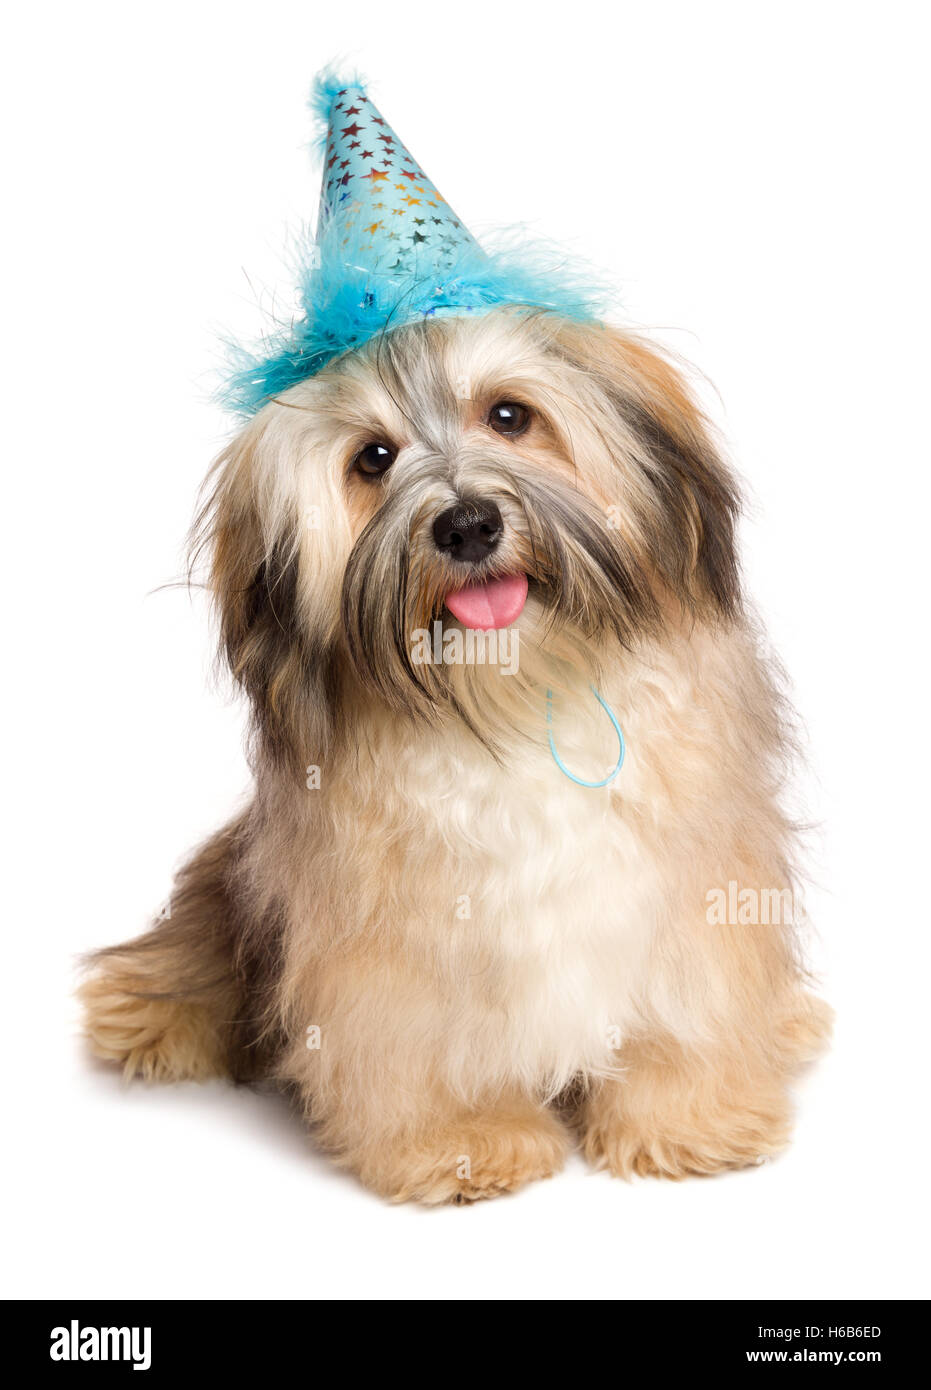 Heureux mignon Bichon Havanese puppy dog in a blue party hat Banque D'Images